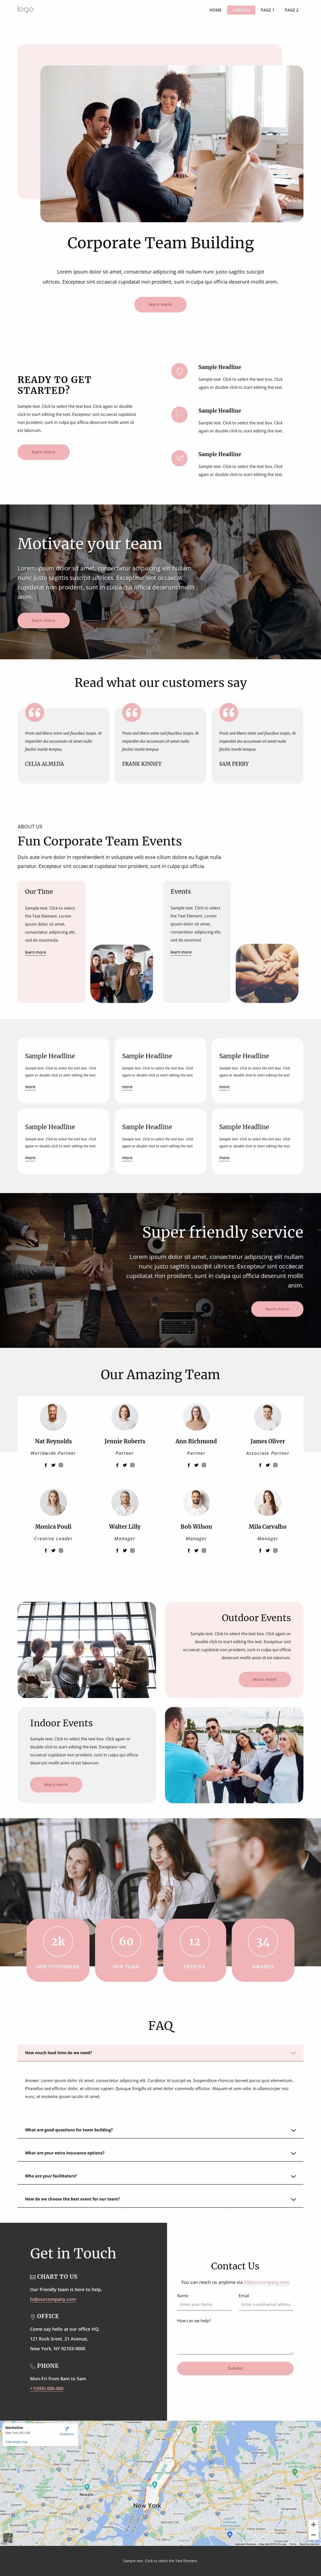 Corporate team building Website Design